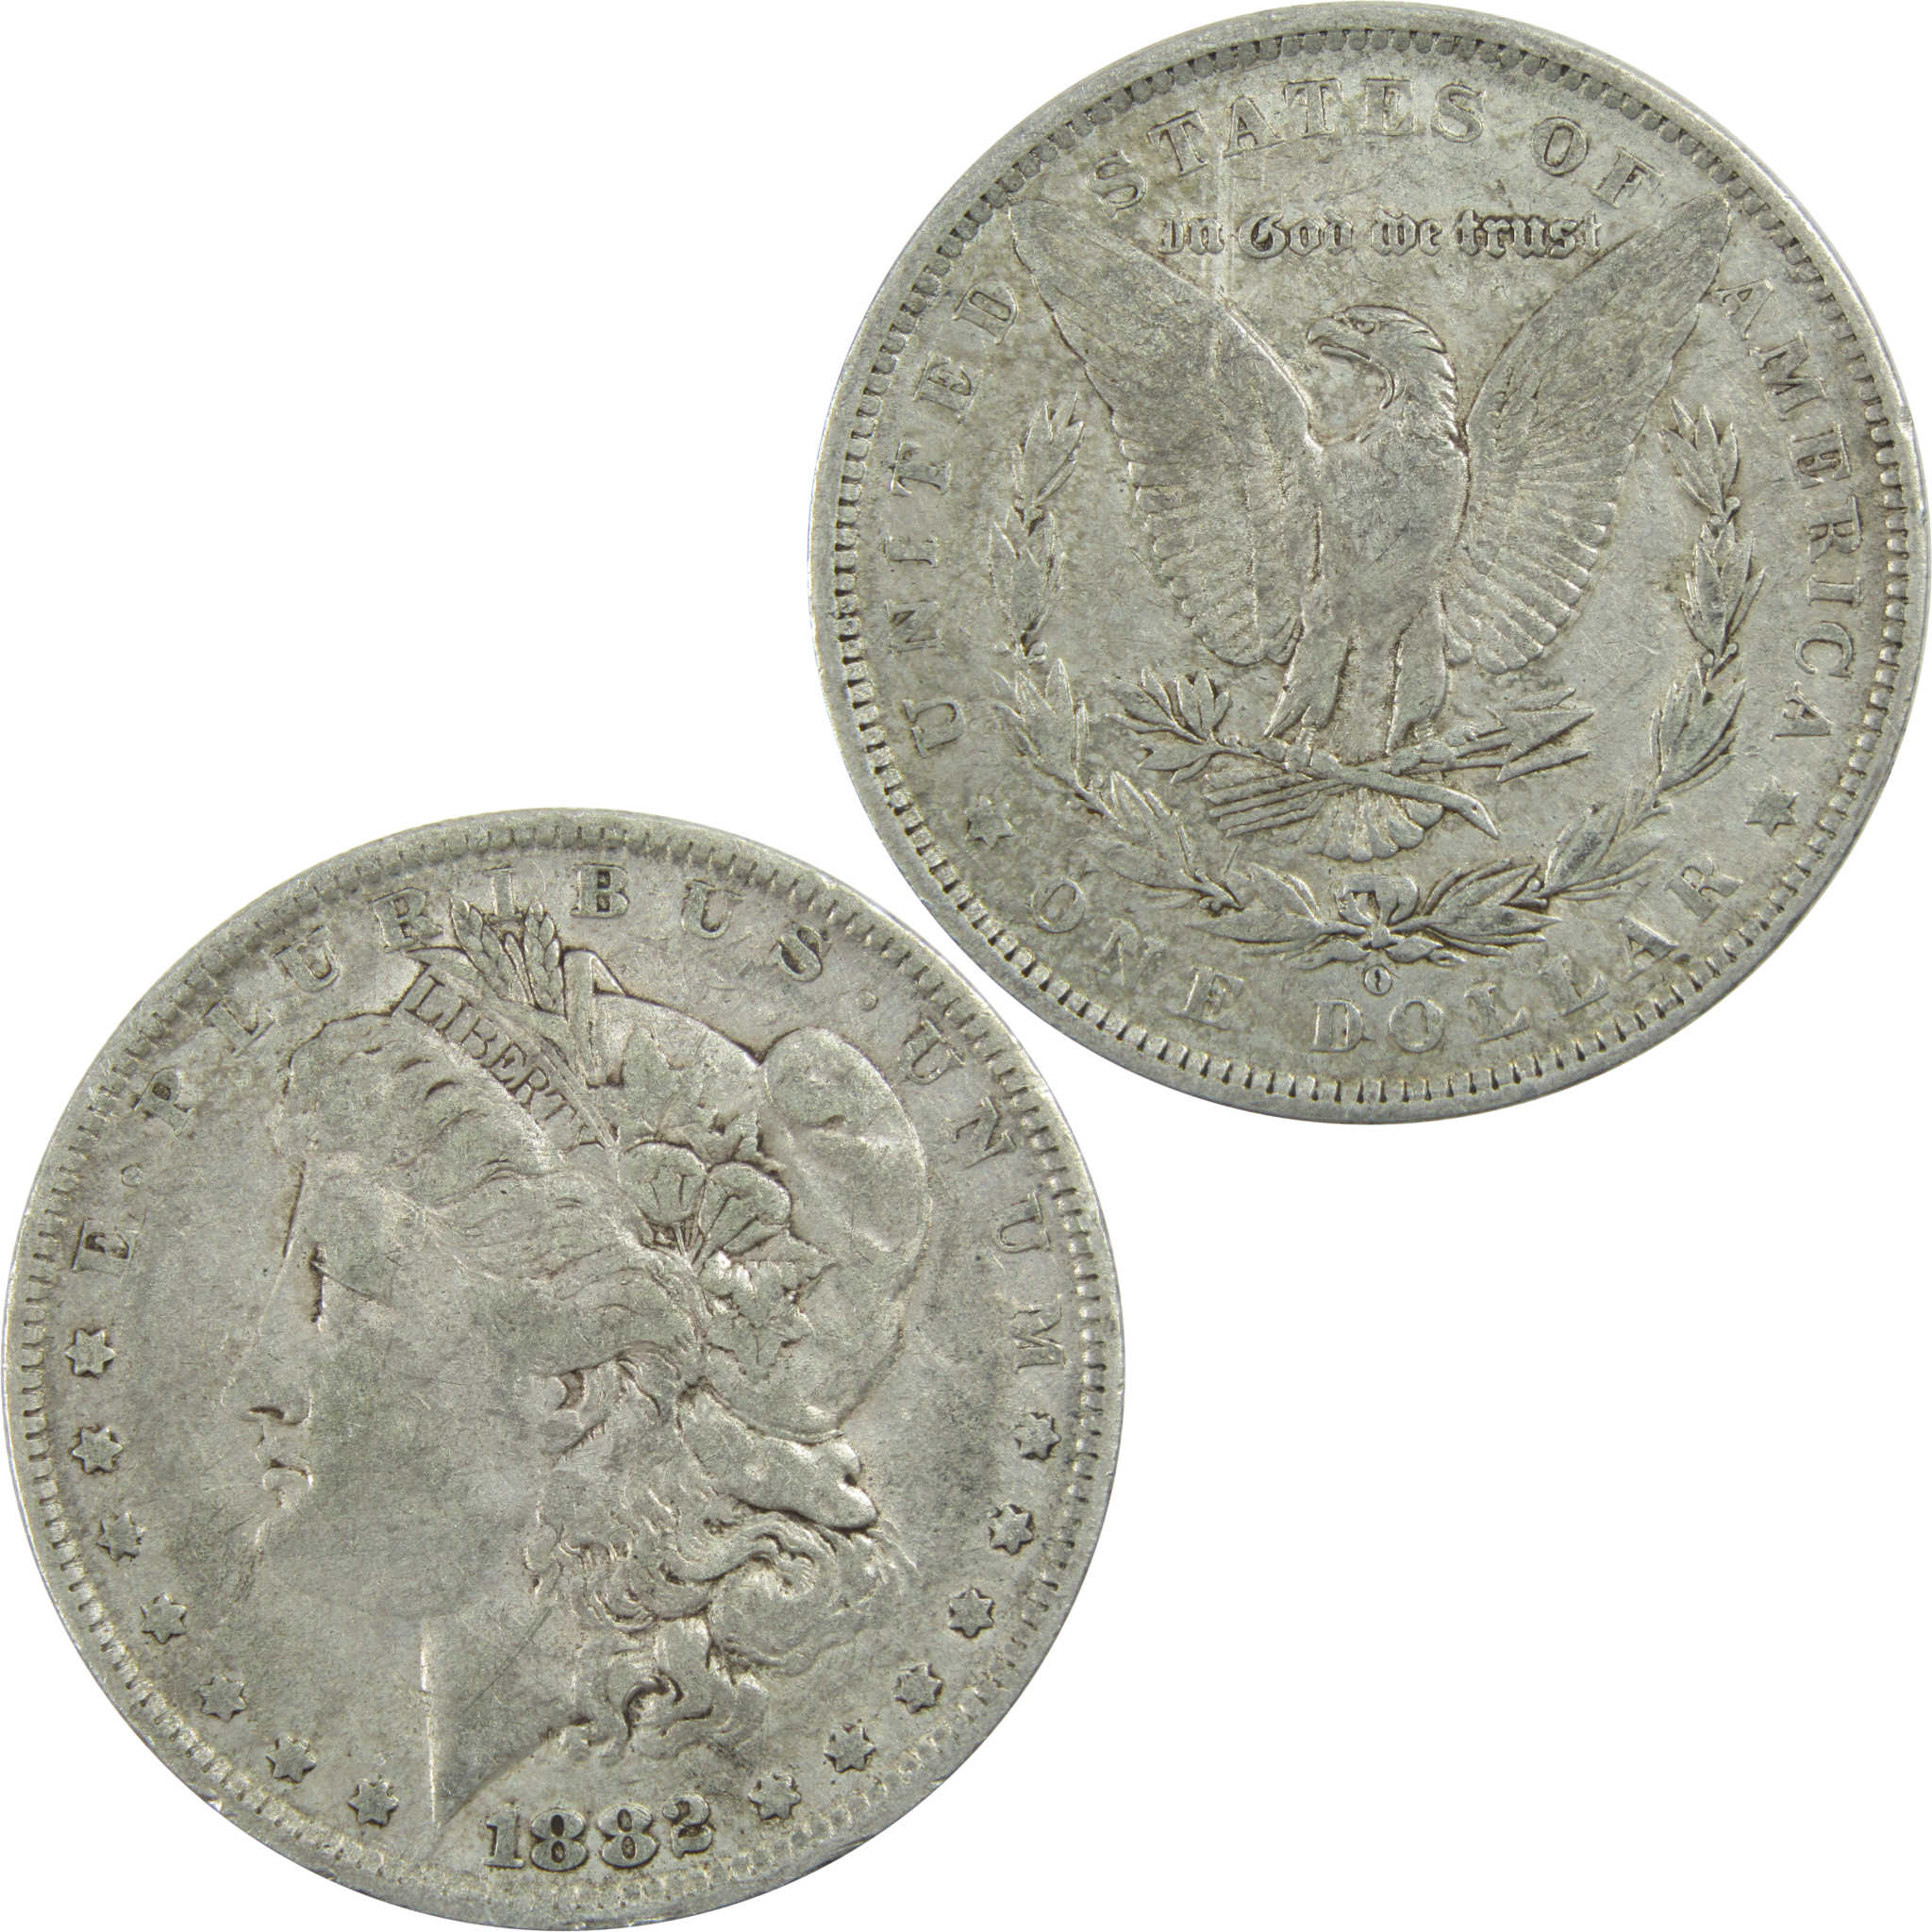 1882 O/S Morgan Dollar VF Very Fine Silver $1 Coin SKU:I13605 - Morgan coin - Morgan silver dollar - Morgan silver dollar for sale - Profile Coins &amp; Collectibles